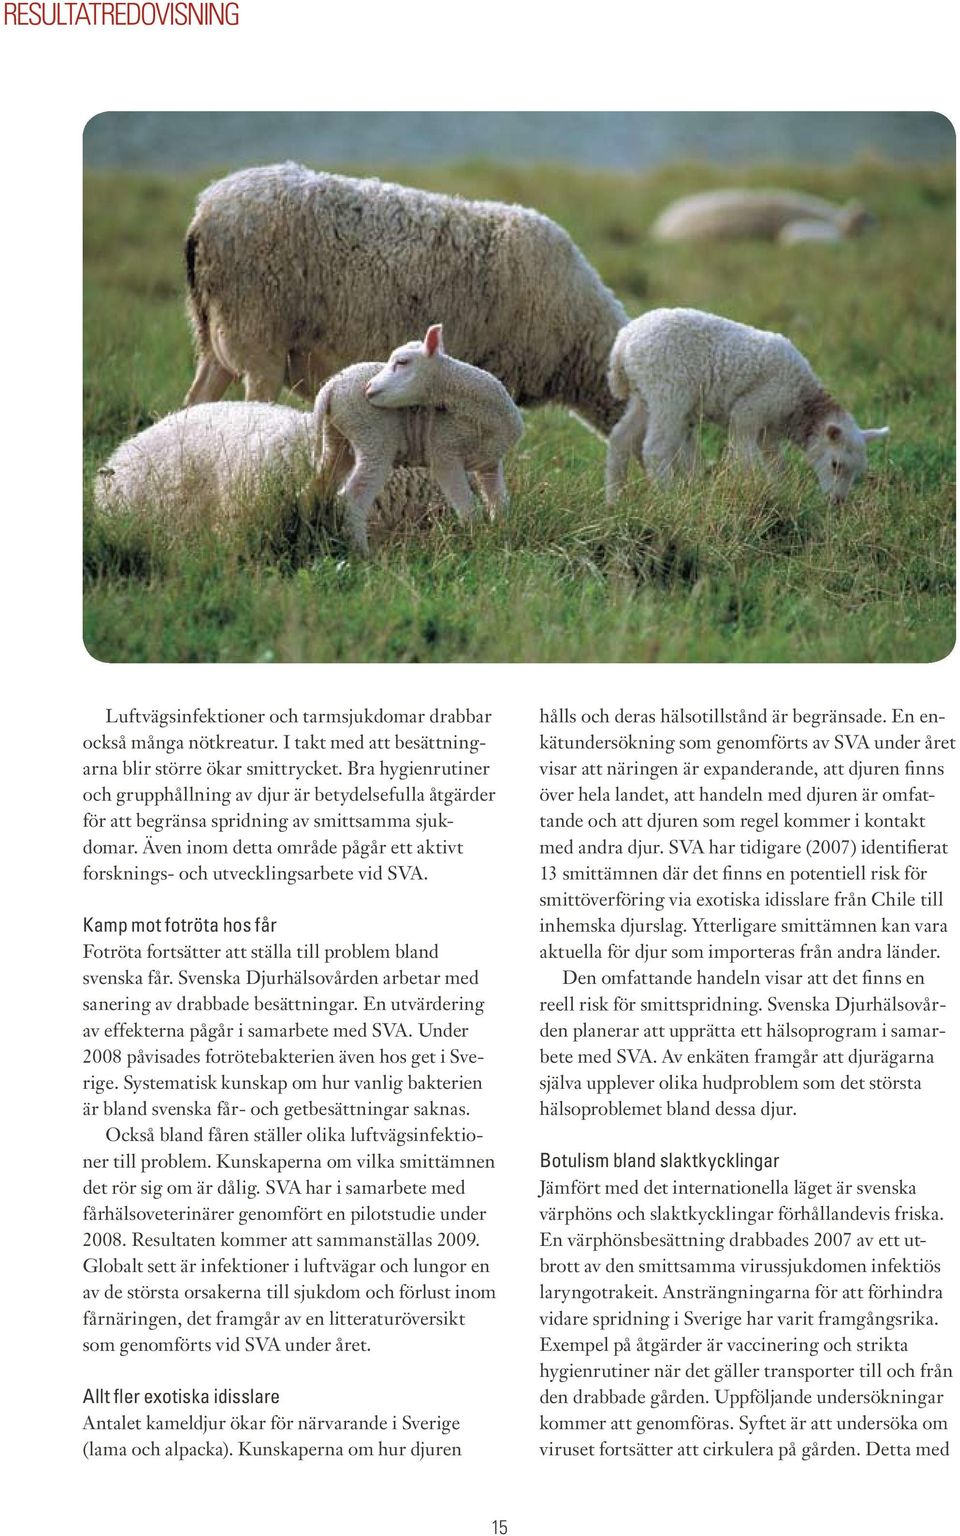 Även inom detta område pågår ett aktivt forsknings- och utvecklingsarbete vid SVA. Kamp mot fotröta hos får Fotröta fortsätter att ställa till problem bland svenska får.